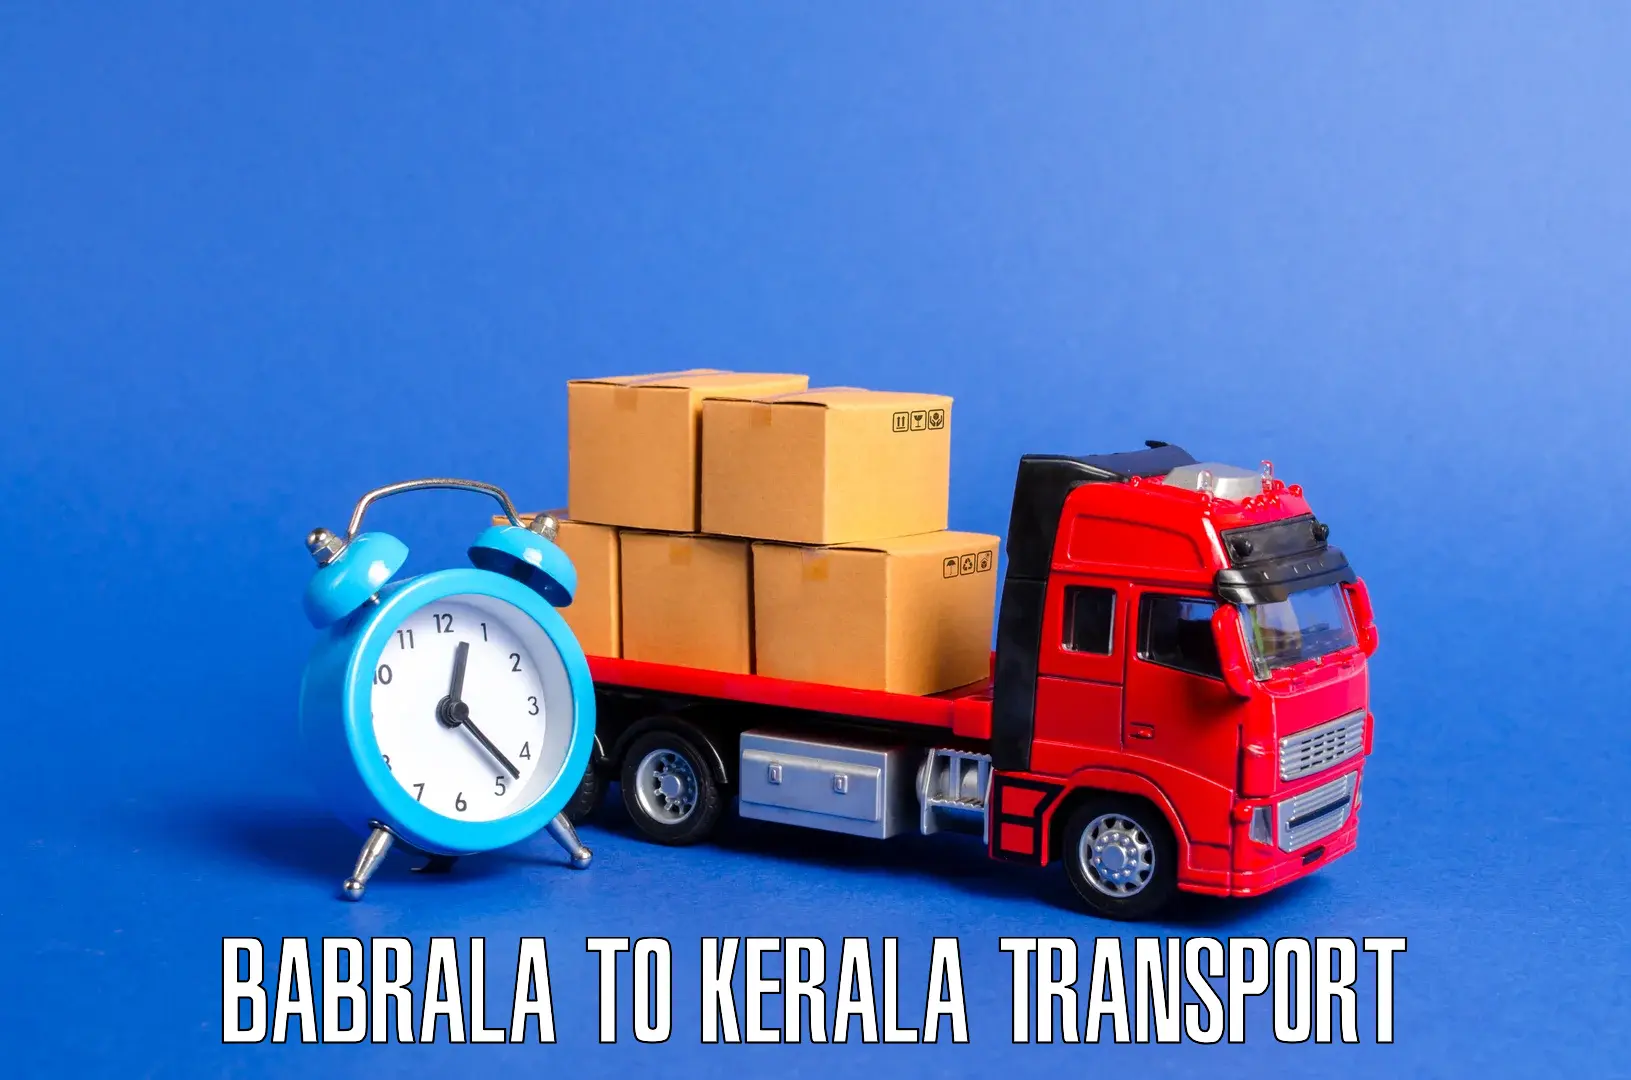 Nearest transport service Babrala to Chavassery